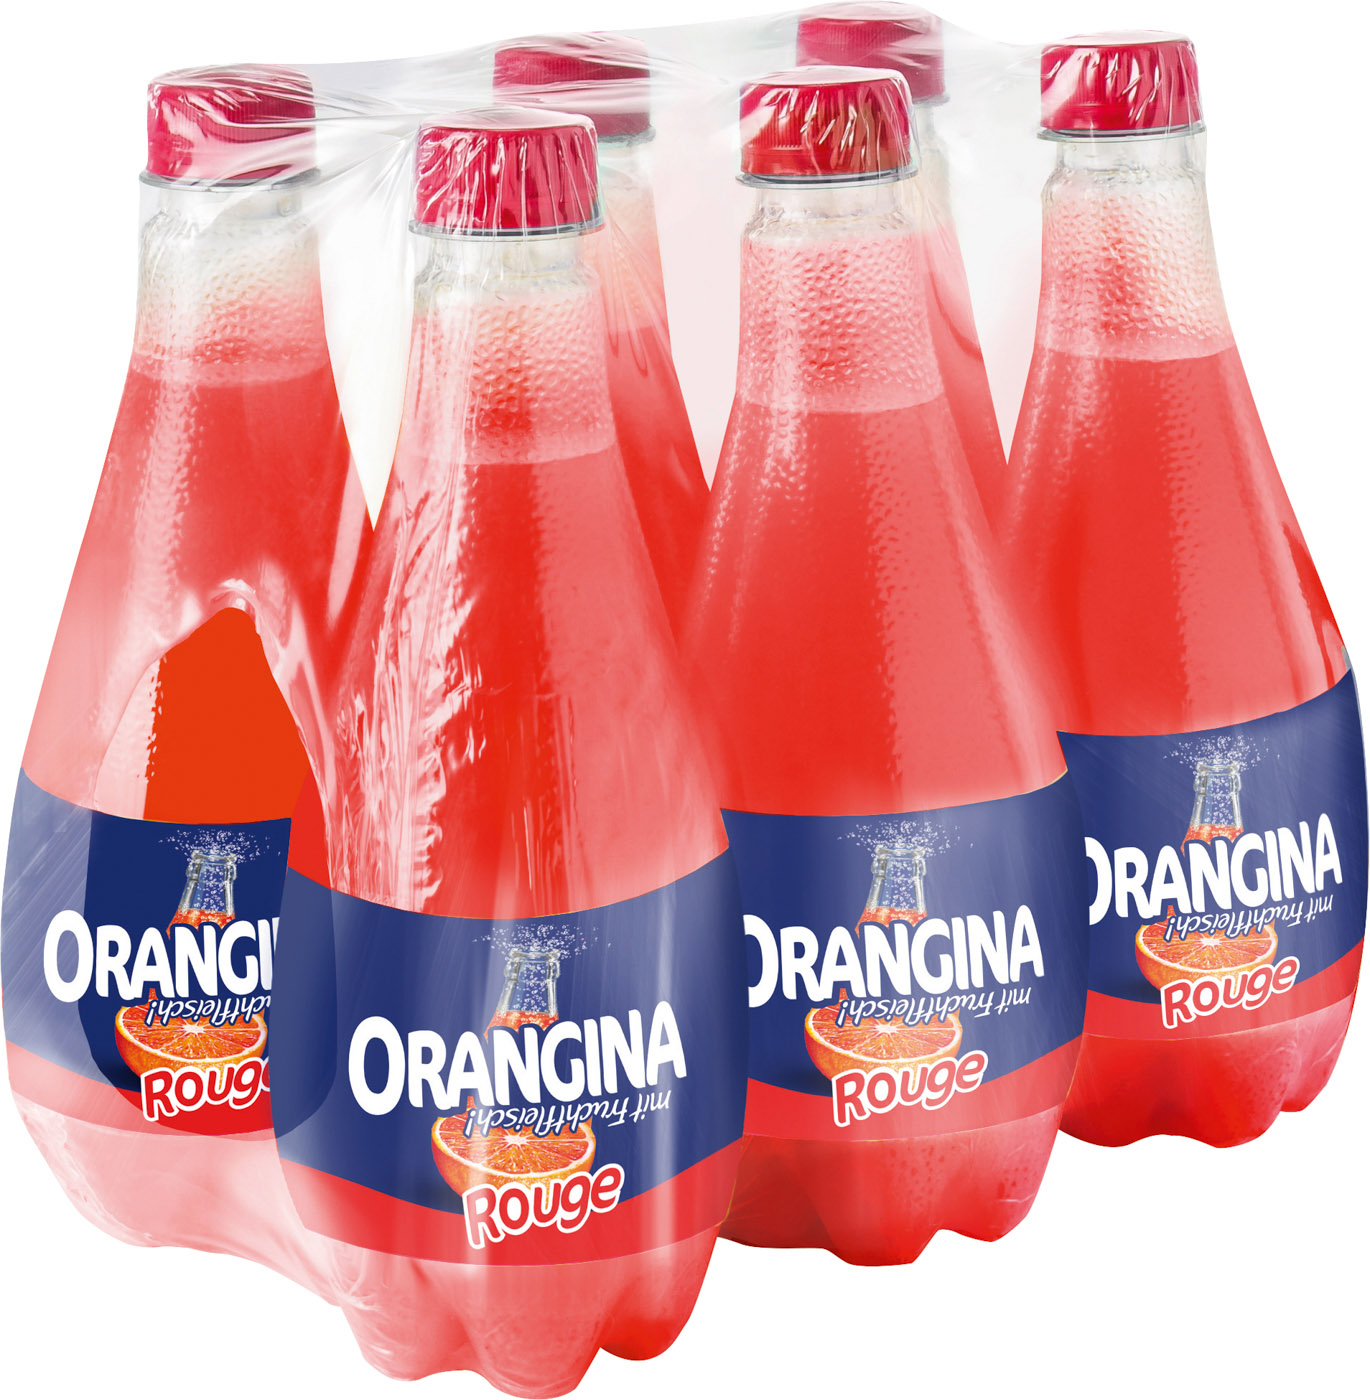 Orangina Rouge 0,5L Flasche Mehrwegartikel (inkl. Pfand)